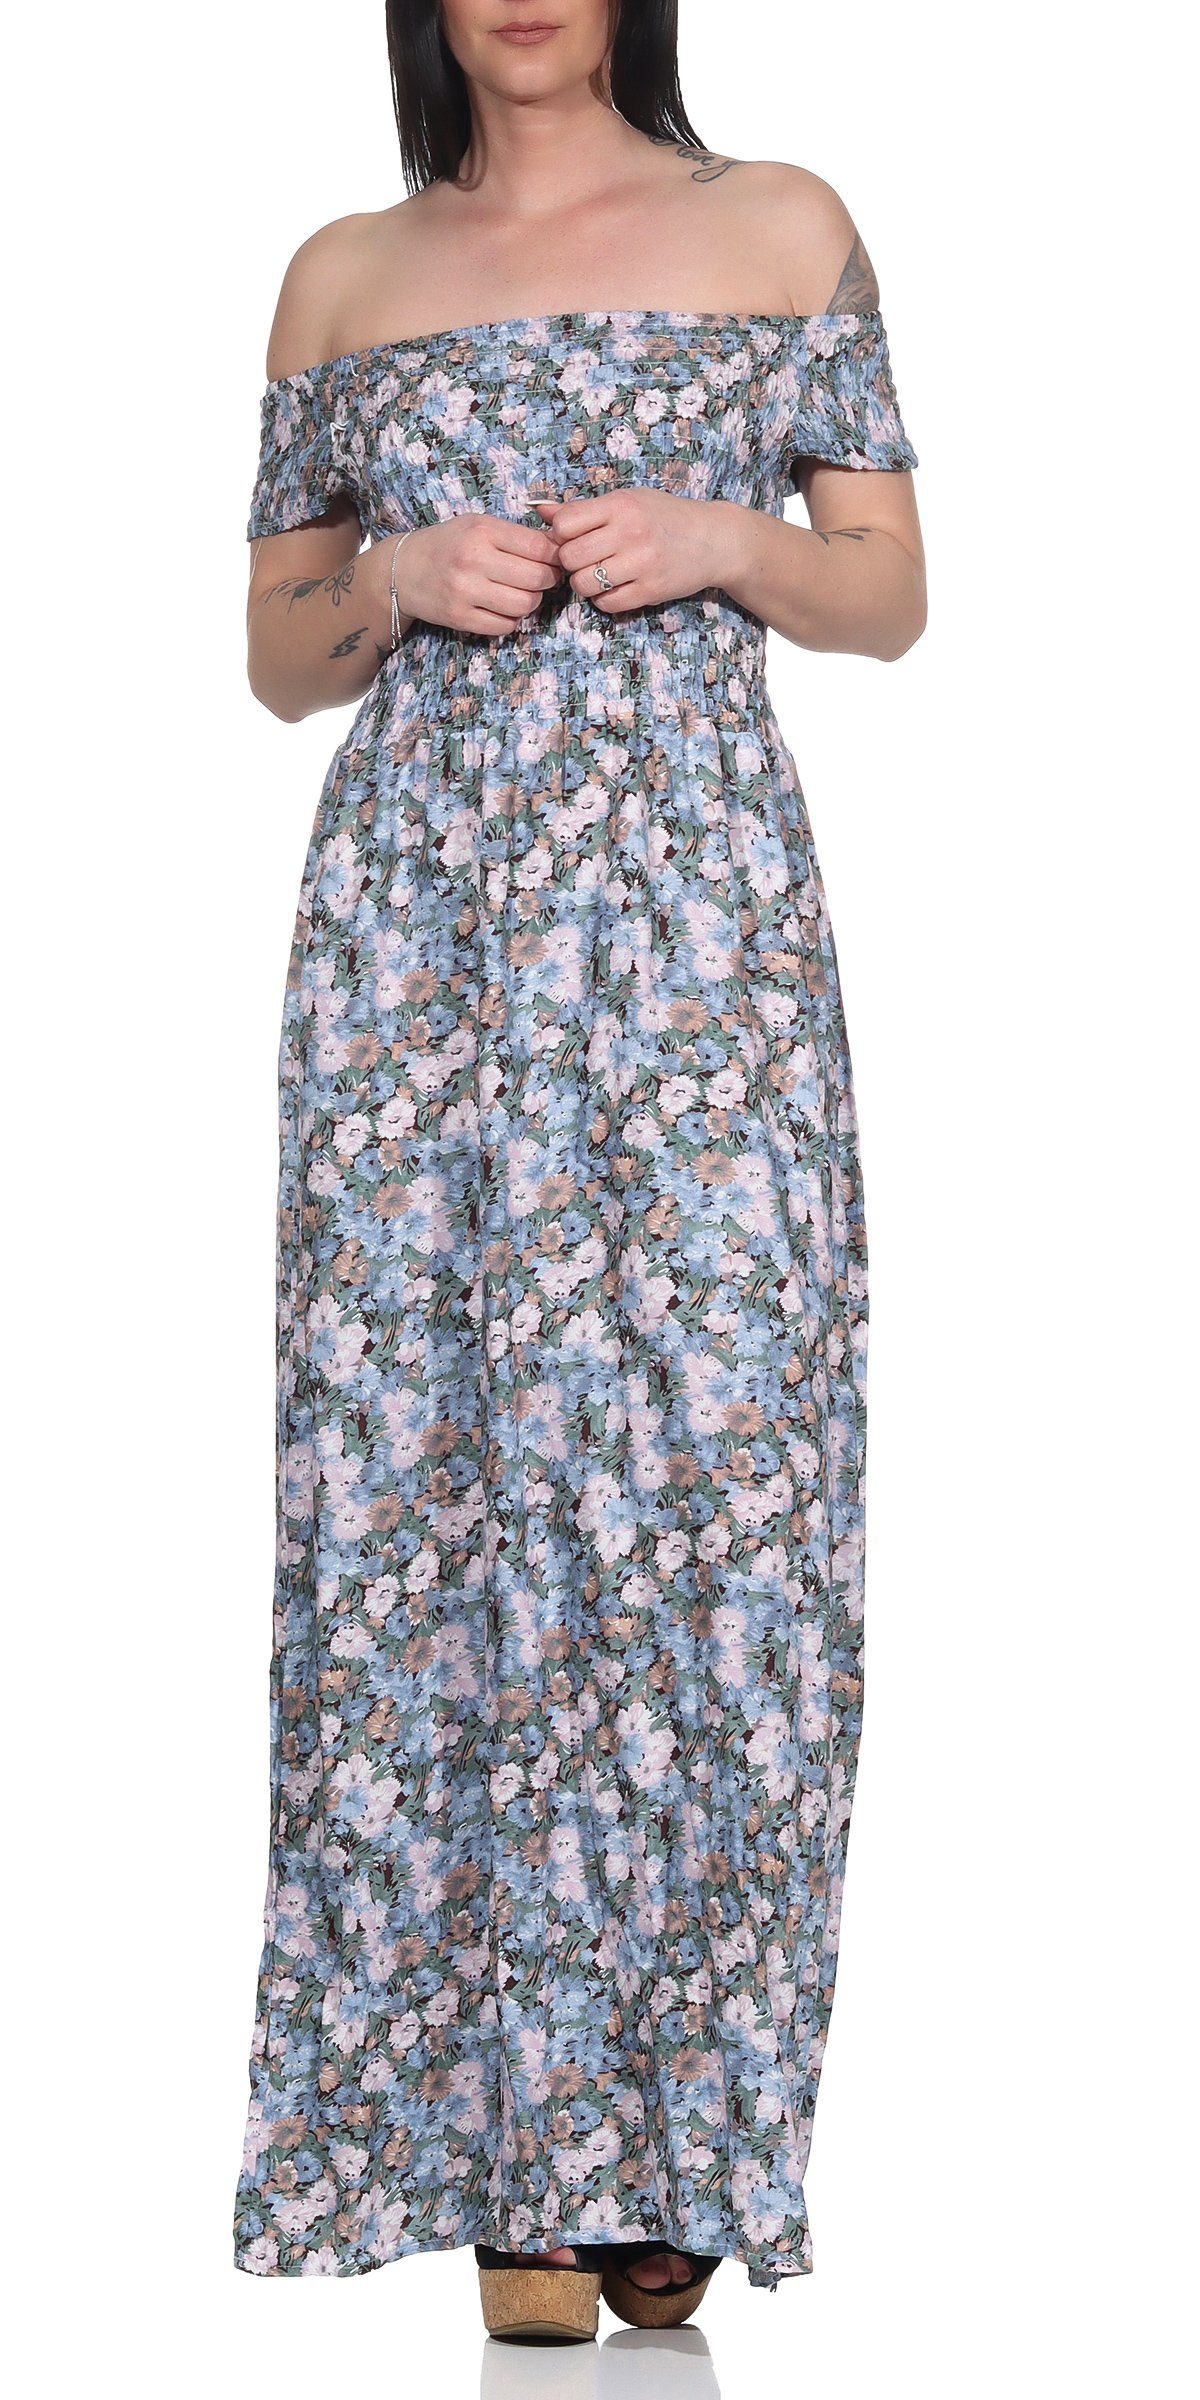 Aurela Damenmode Maxikleid »Sommerkleider für Damen luftig & leichte  Strandkleider« mit Blumendruck, Rundhals- und Carmenausschnitt, Länge:  132-134cm online kaufen | OTTO